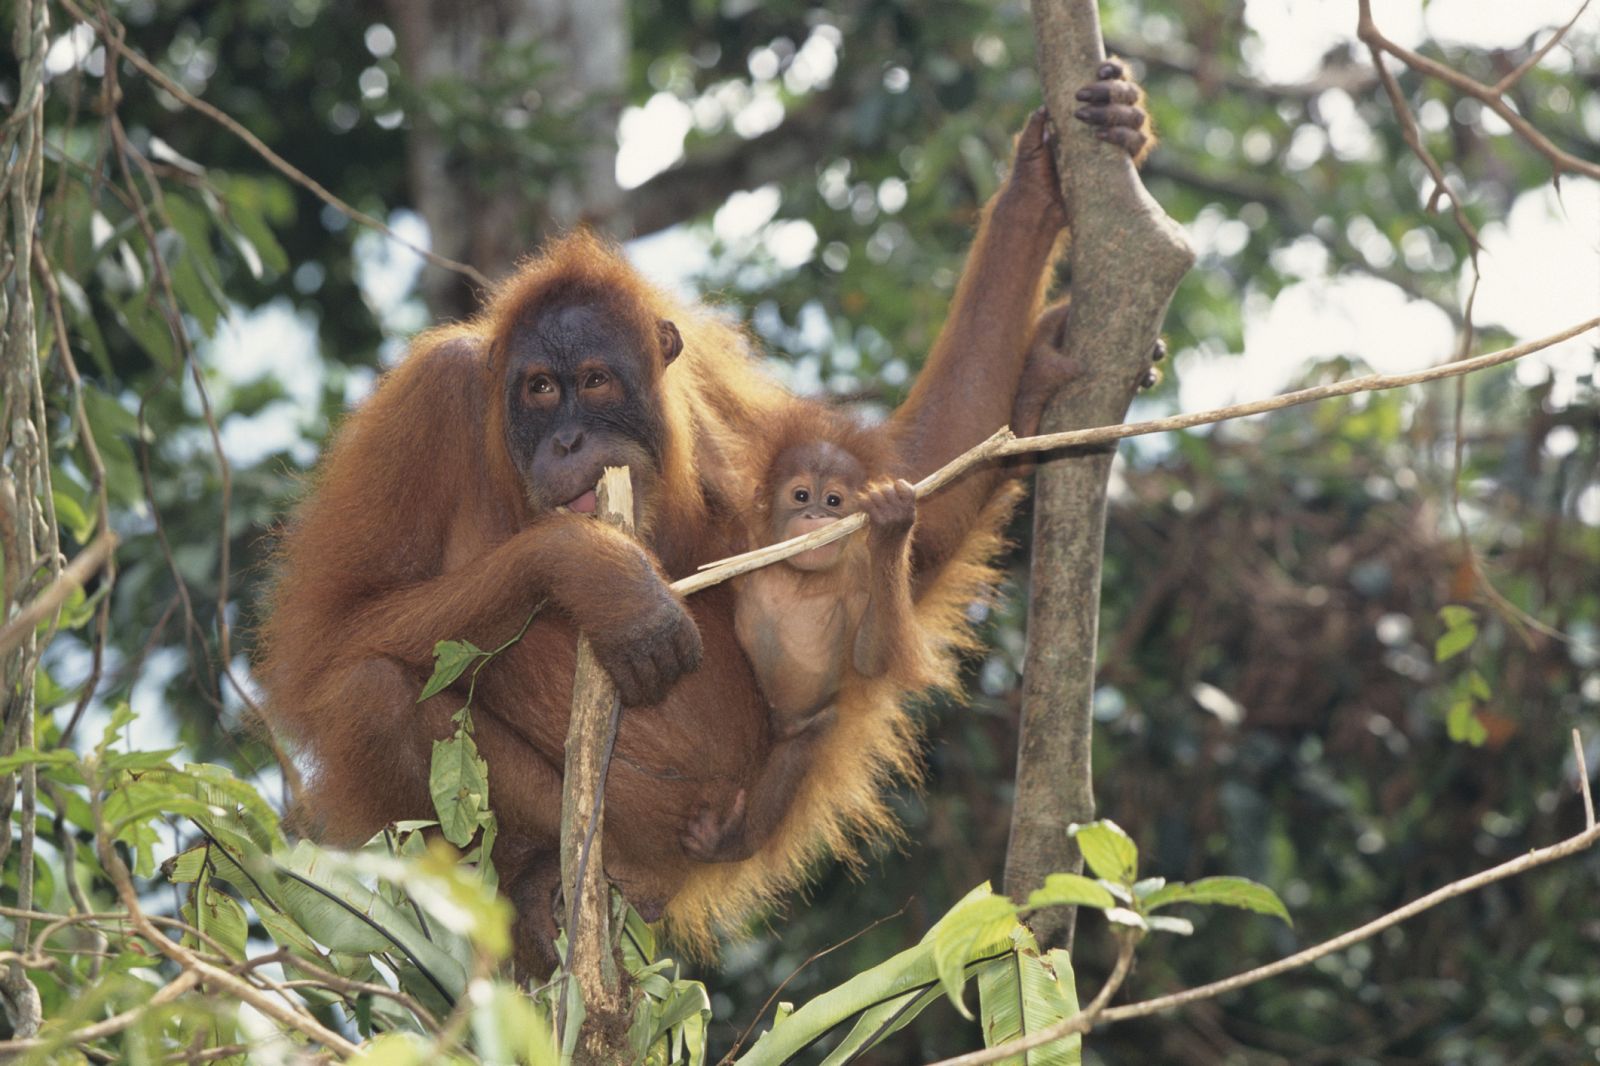 Los orangutanes tienen conocimientos sofisticados sobre técnicas de construcción